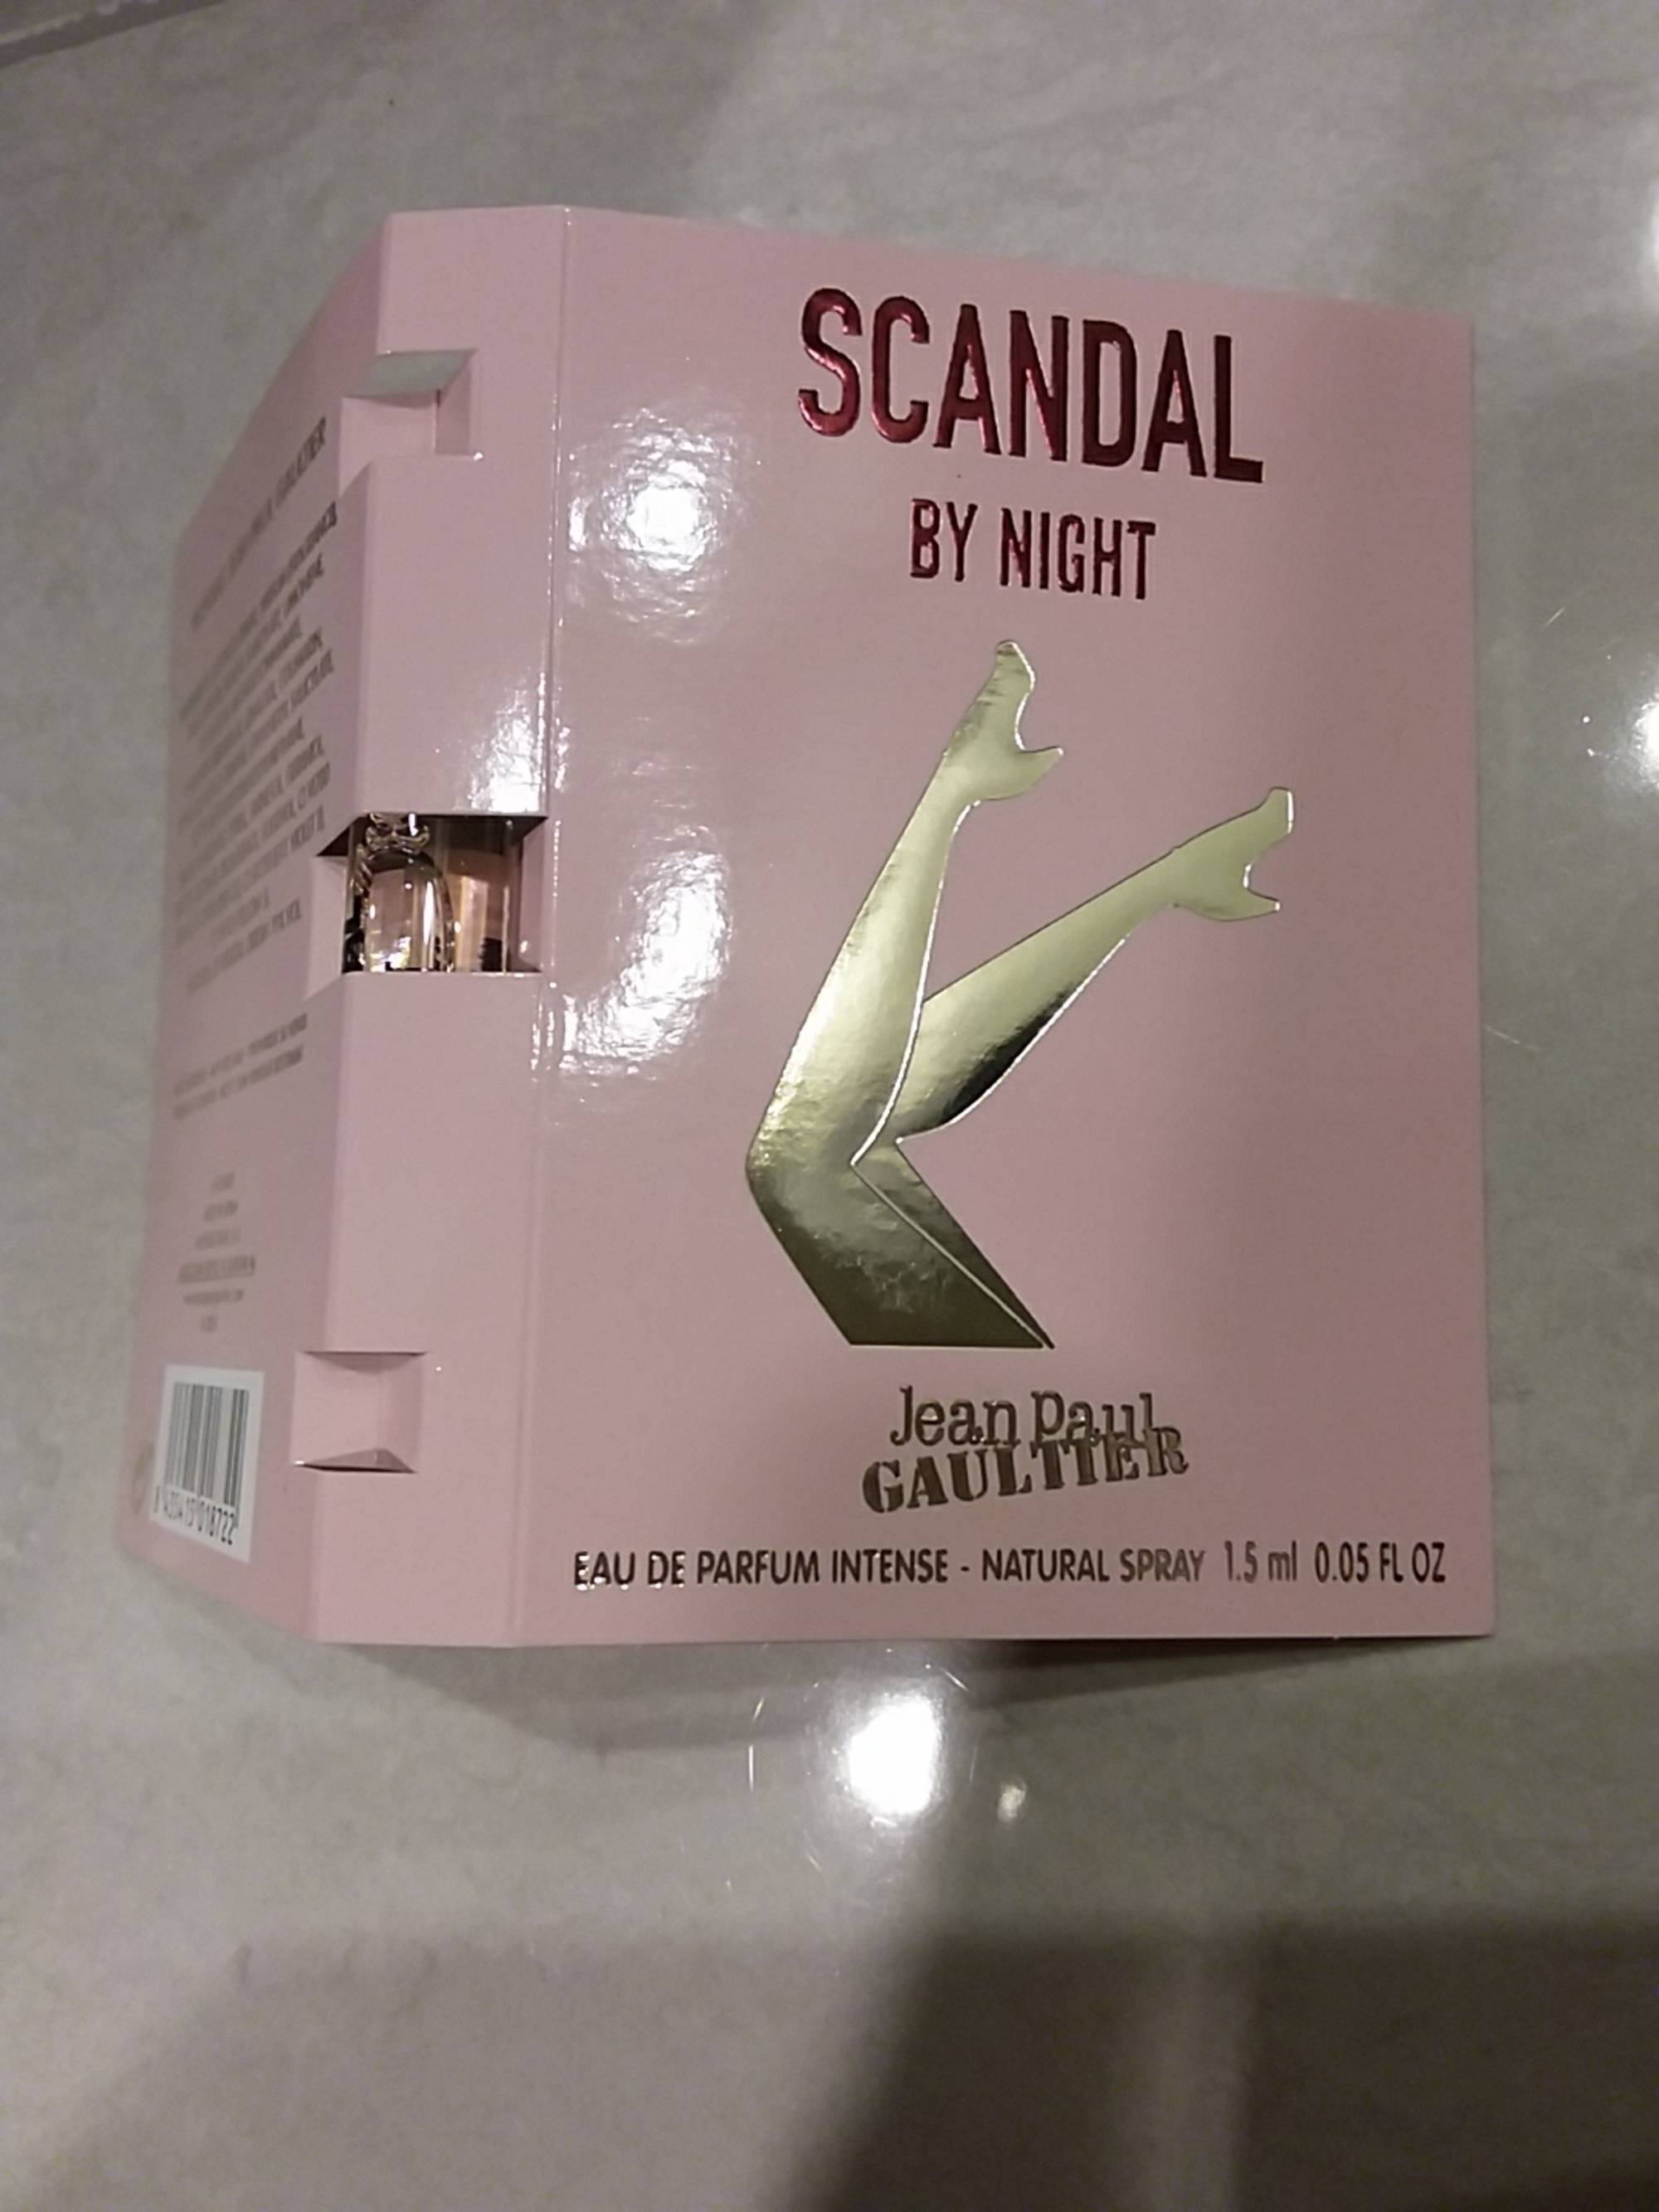 JEAN PAUL GAULTIER - Scandal by Night - Eau de parfum intense